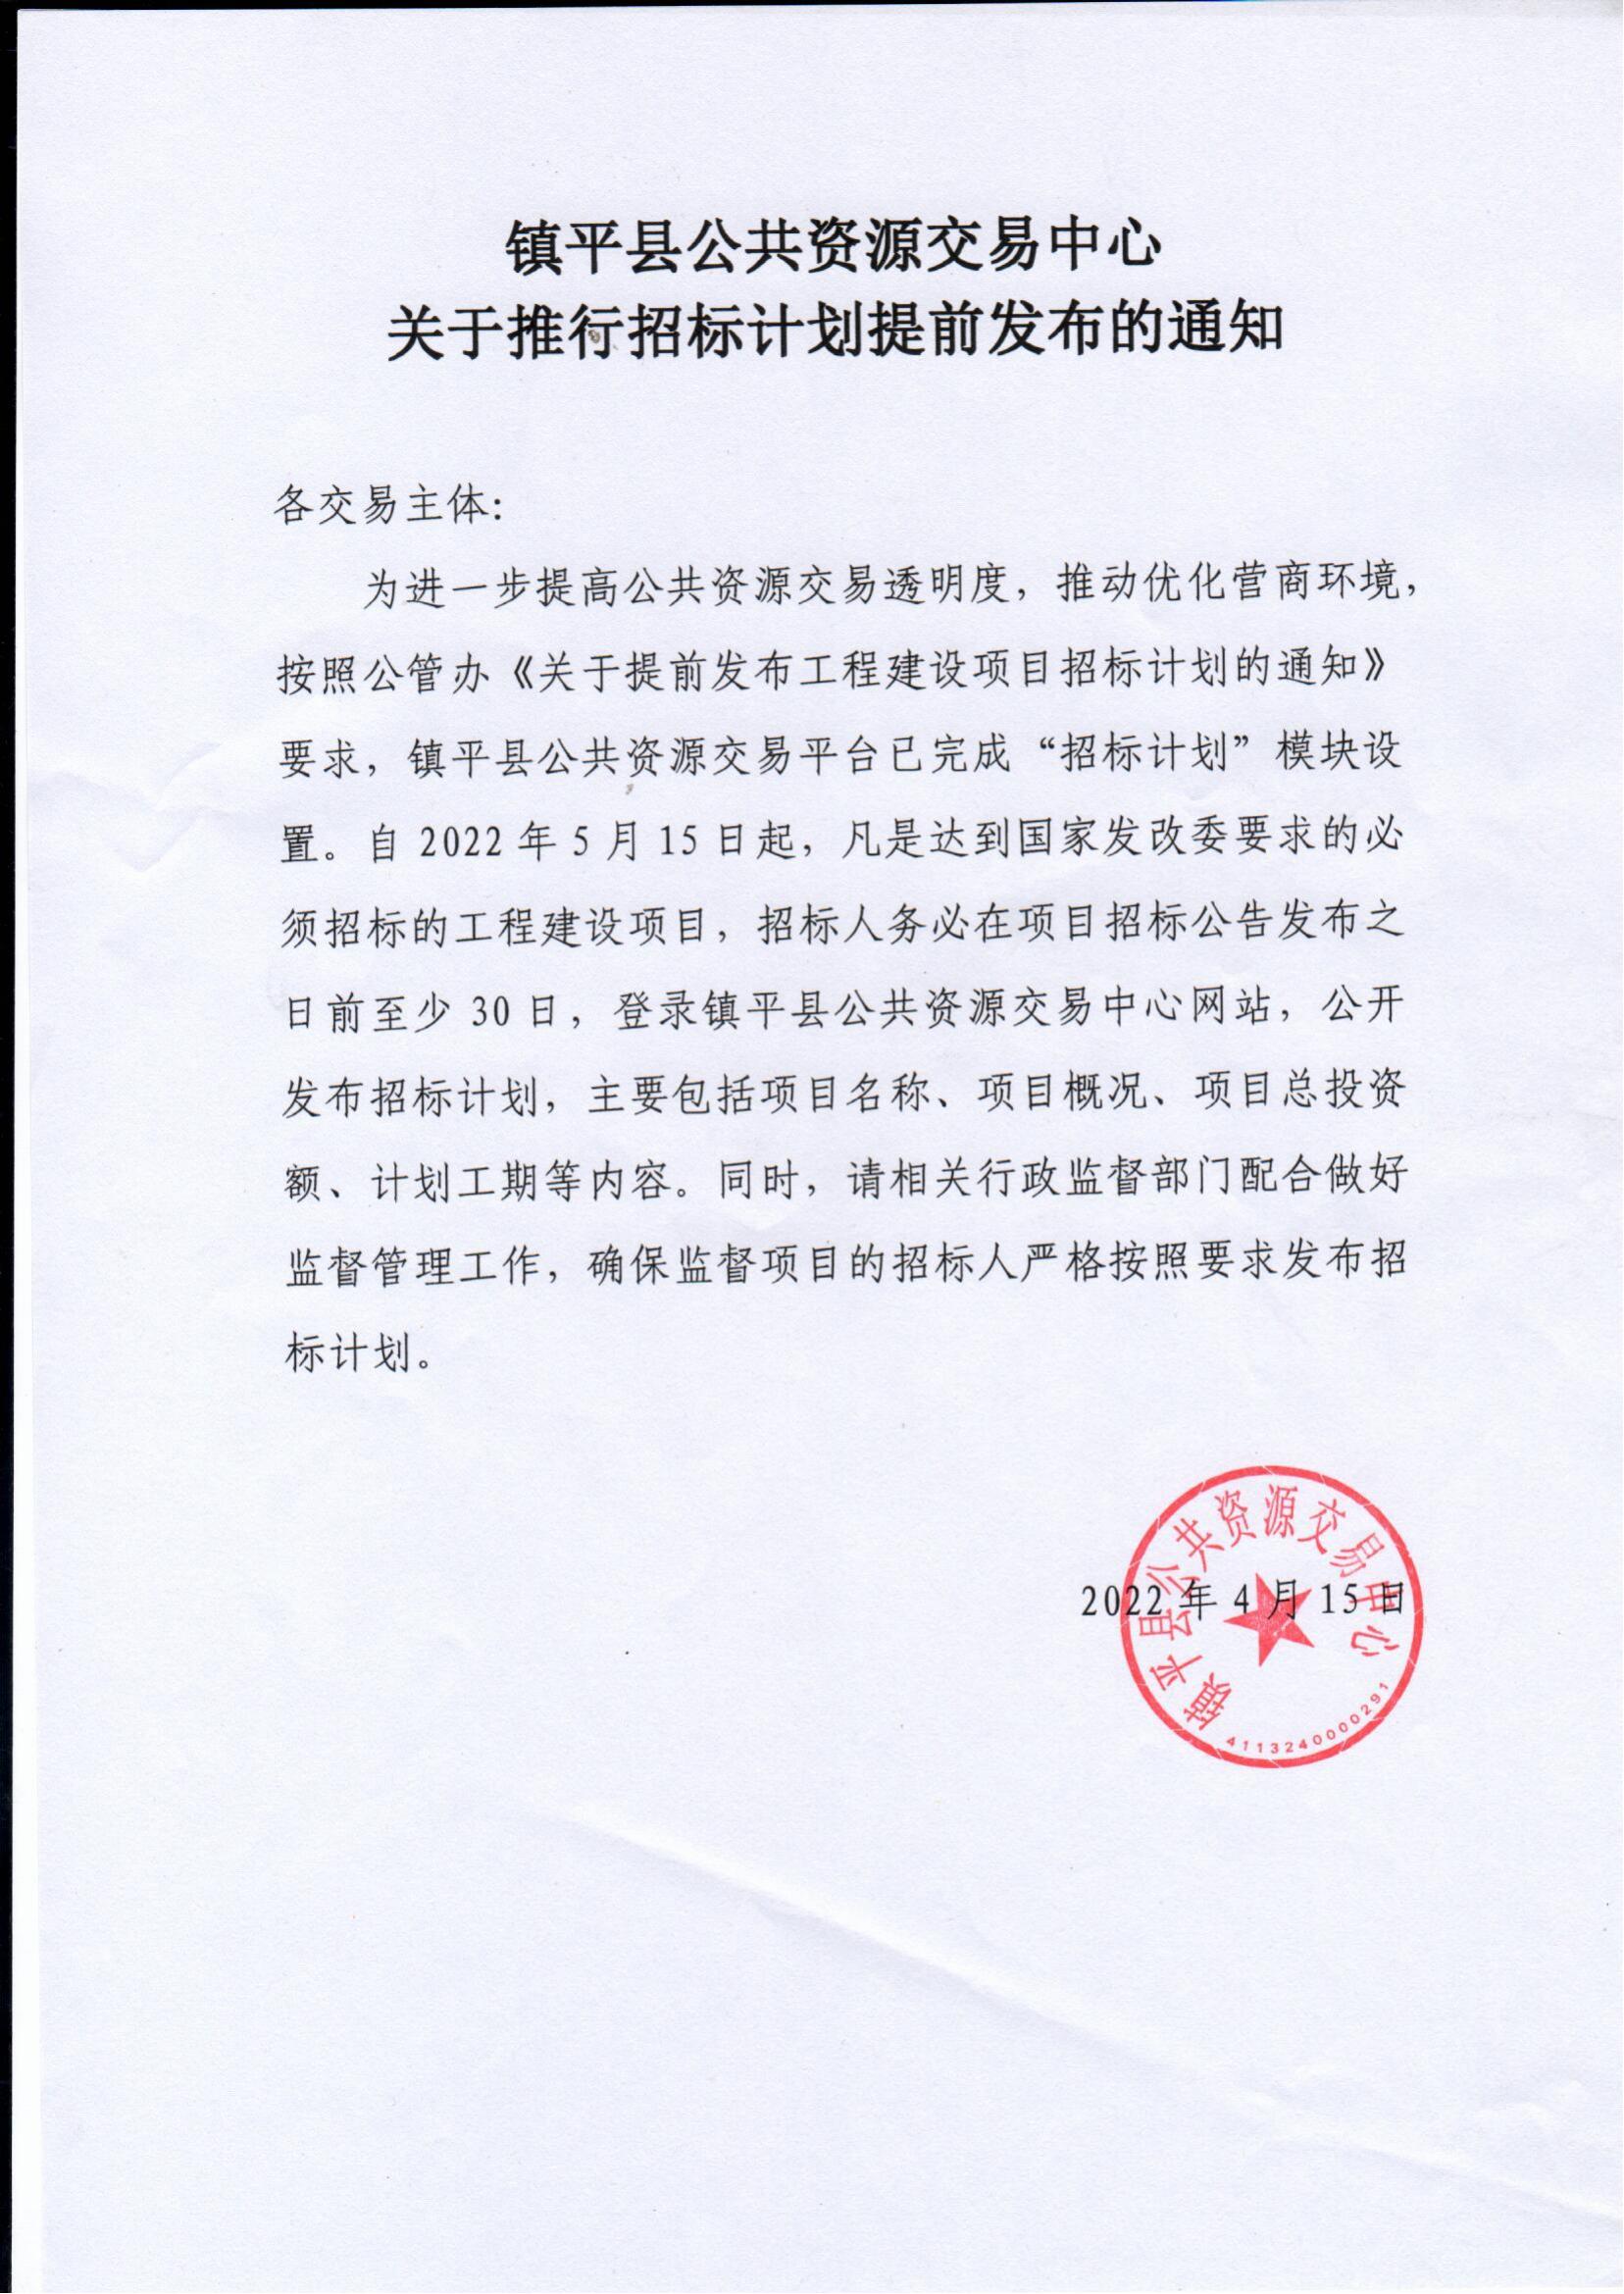 镇平县公共资源交易中心关于推行招标计划提前发布的通知_00.jpg